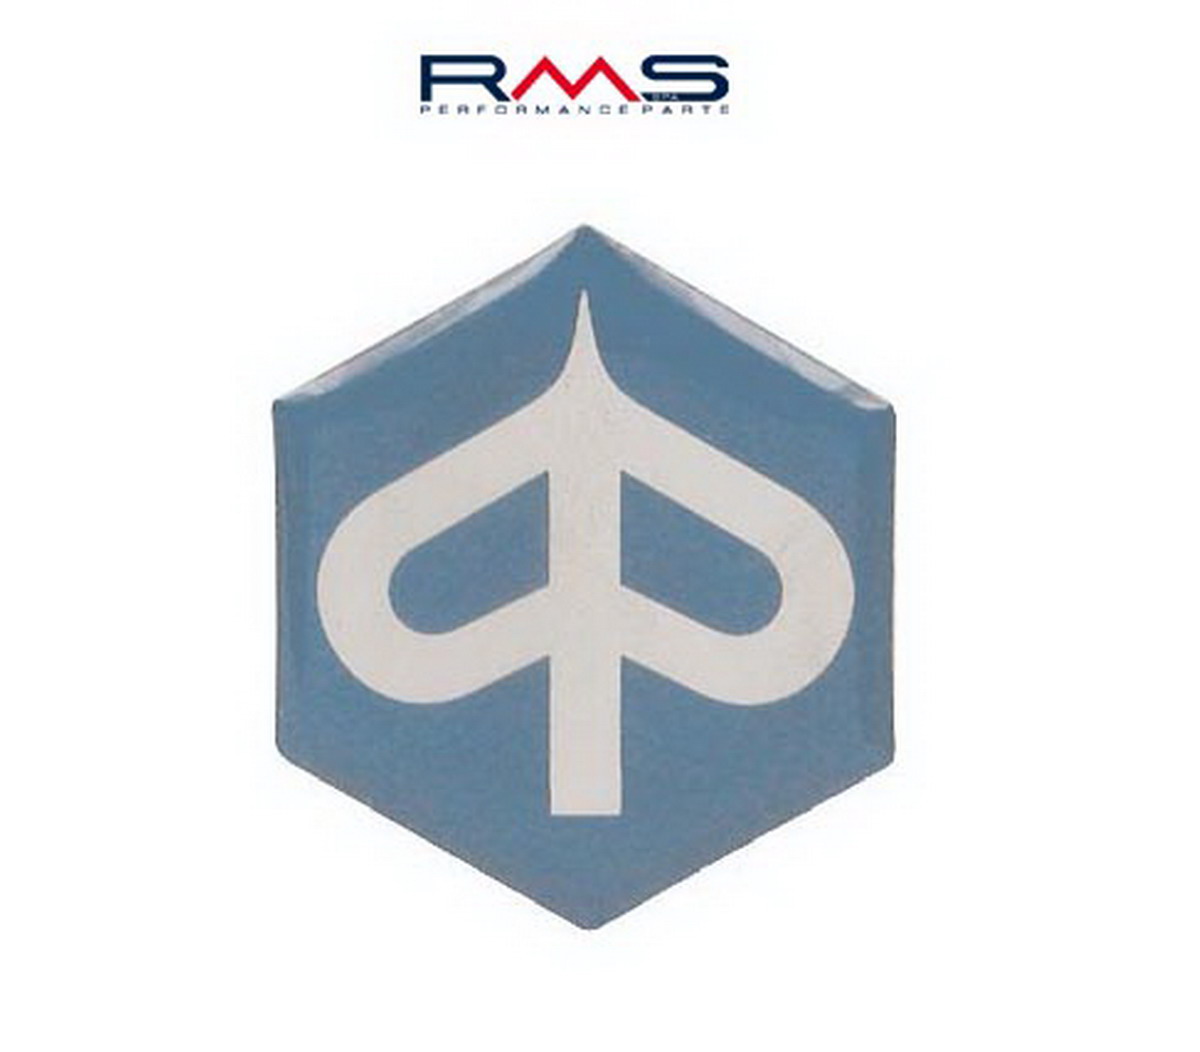 Obrázek produktu Emblém RMS 142720080 27mm pro kryt klaksonu 142720080